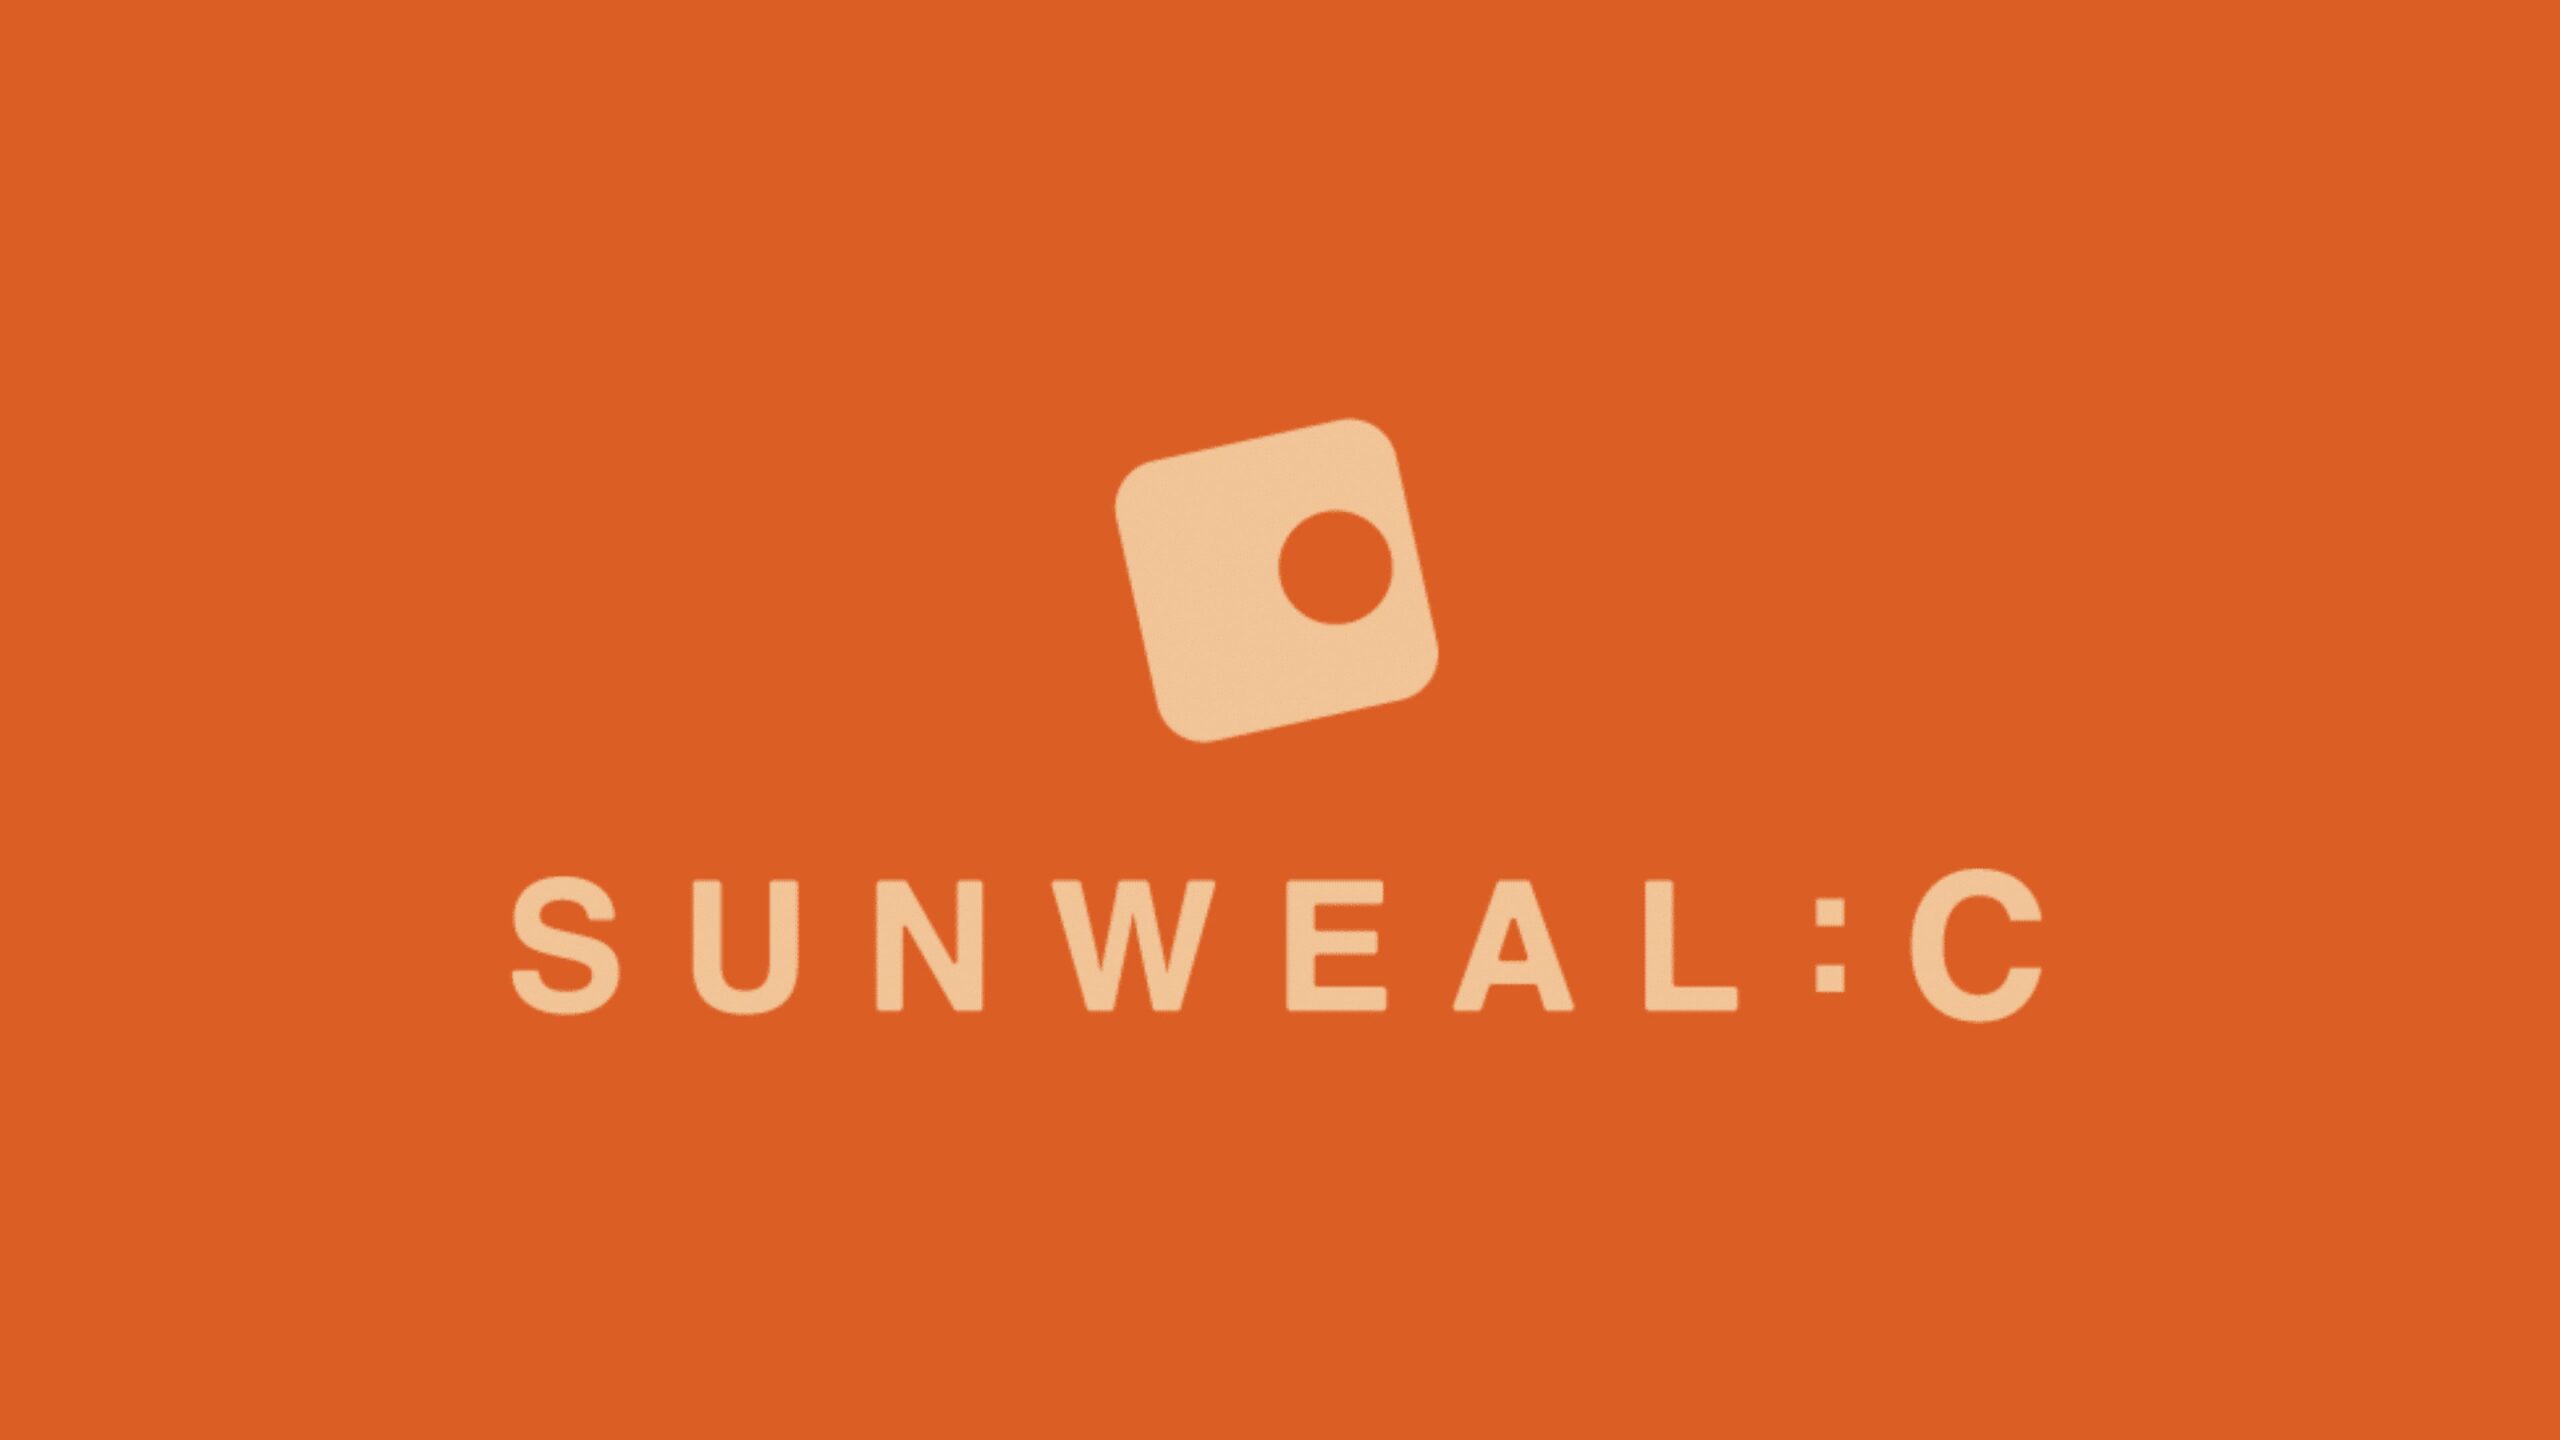 SUNWEALC株式会社、Vareal株式会社より資金調達を実施